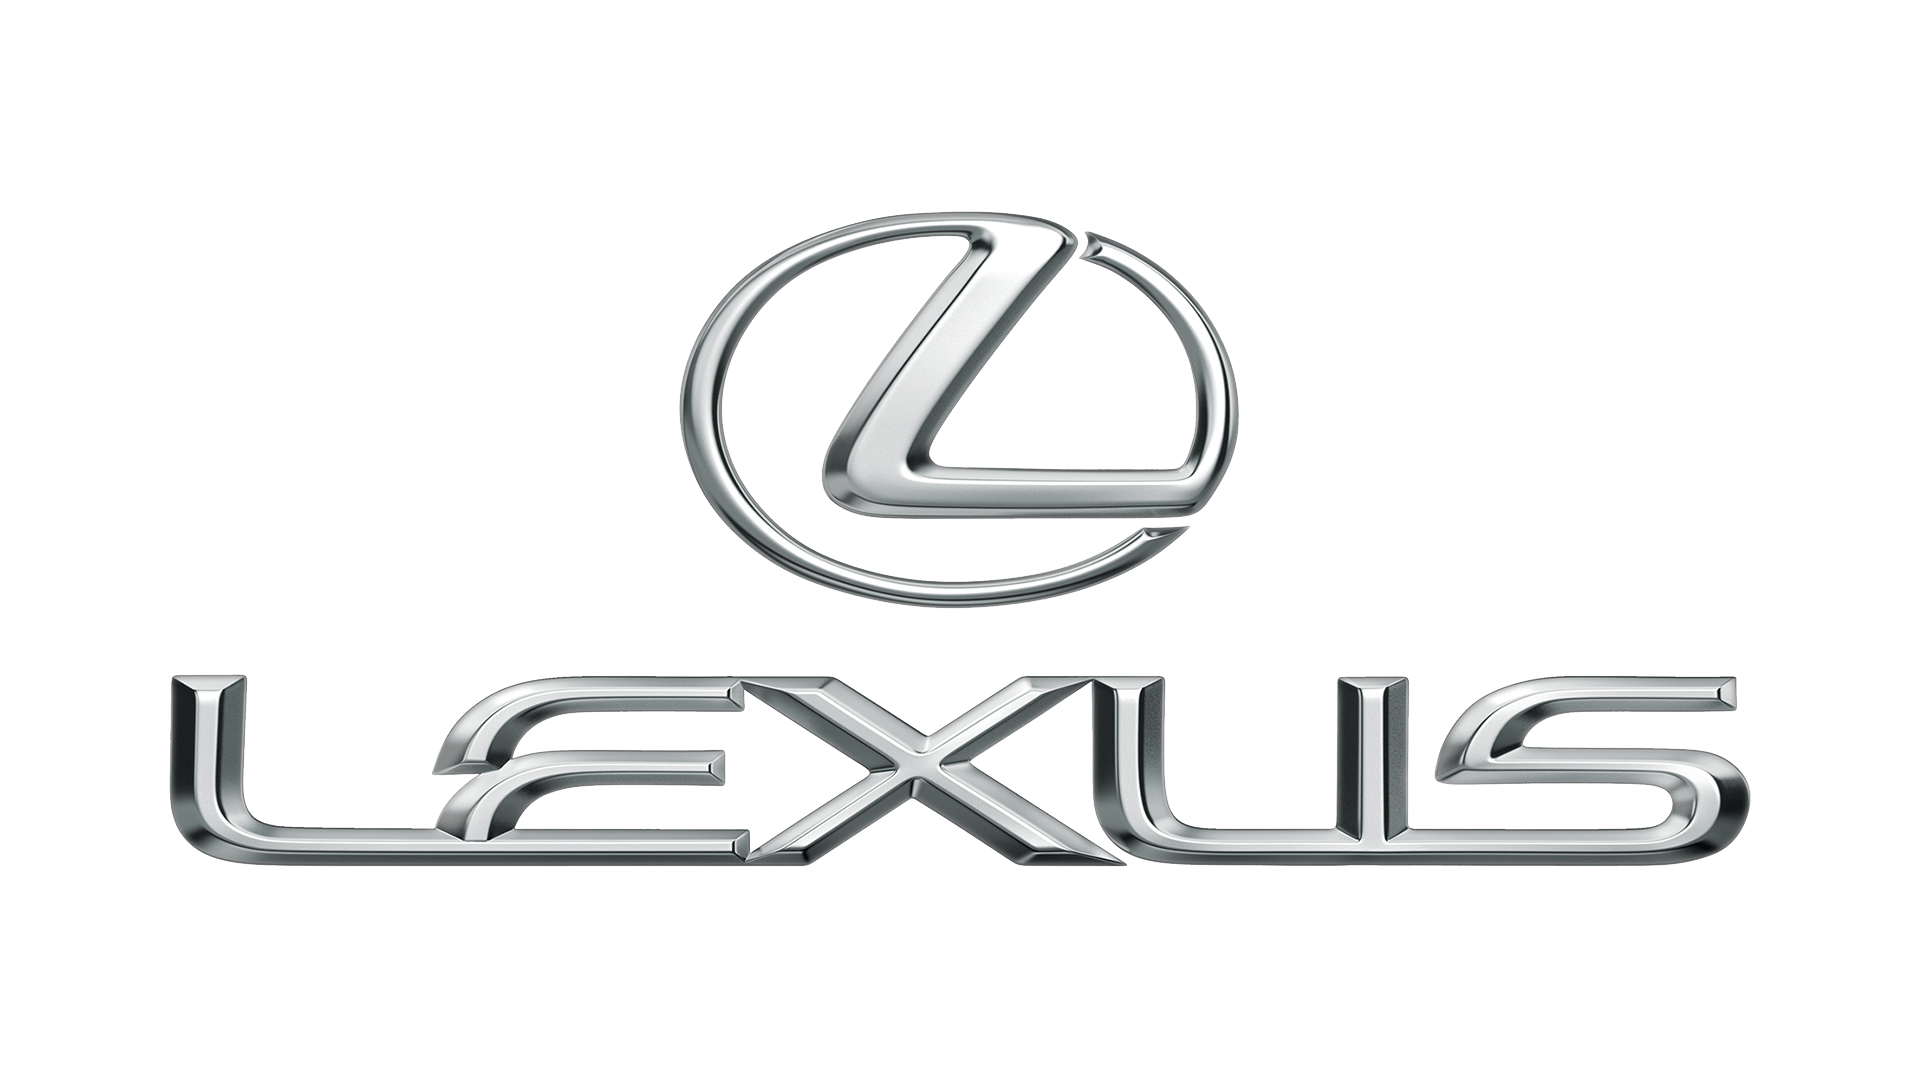 Lexus logo PNG transparent image download size 1920x1080px